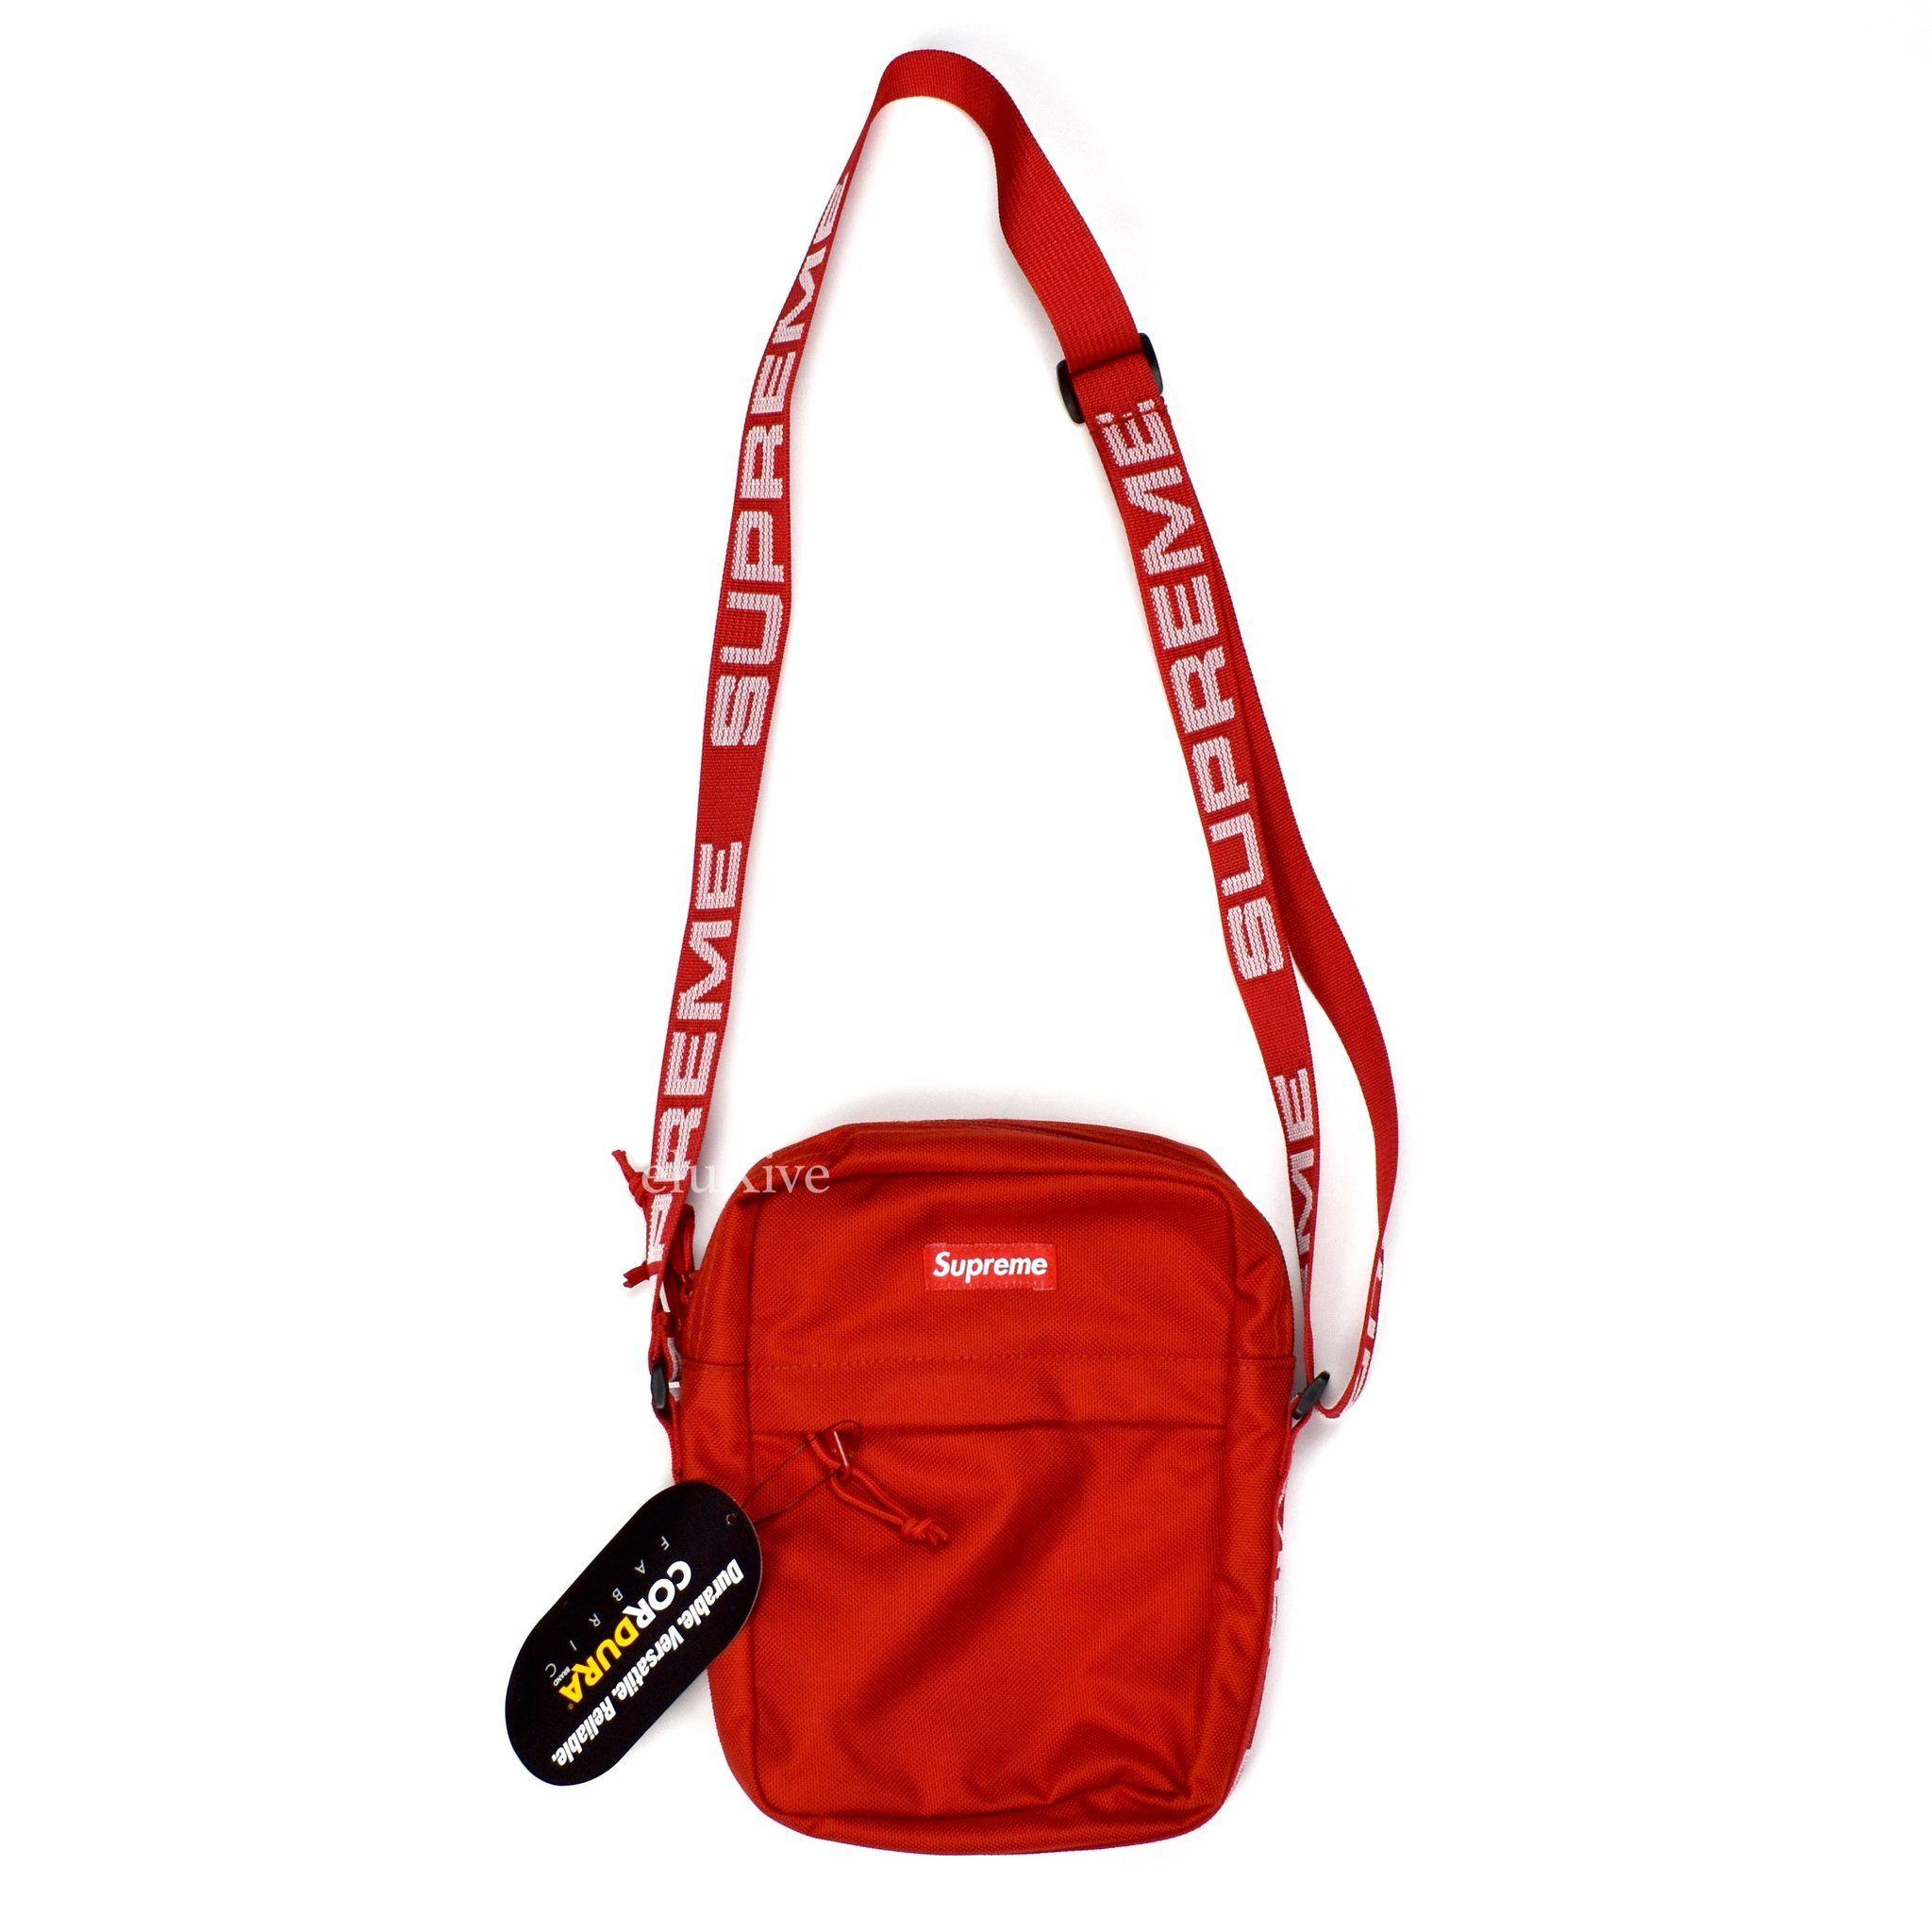 Supreme Bag Logo - Supreme Small Red Box Logo Shoulder Bag / Messenger Pack